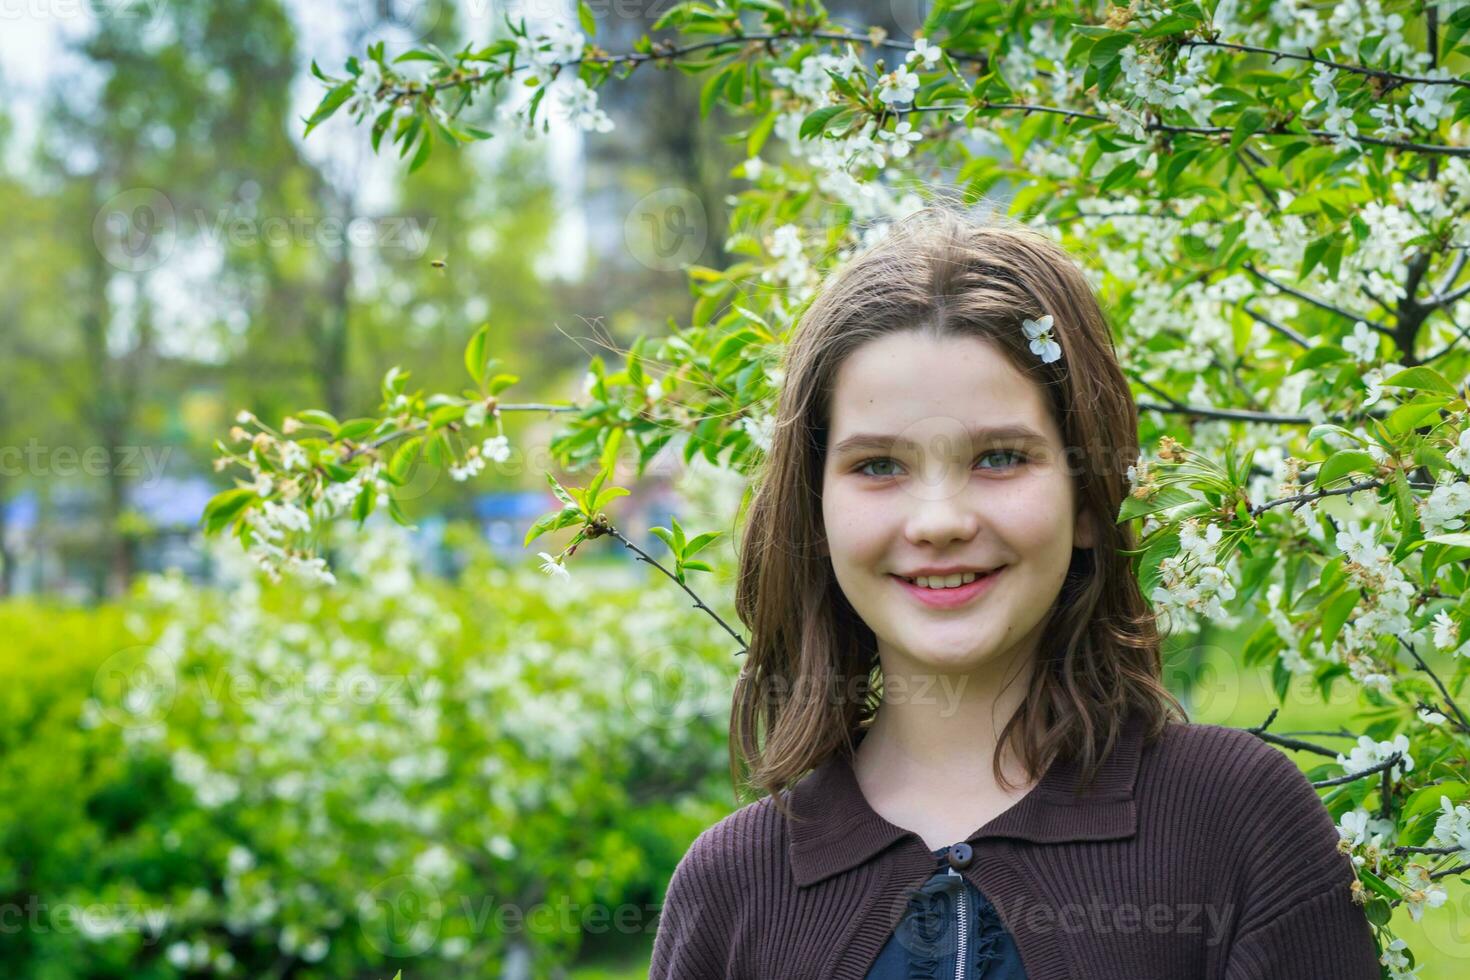 mooi meisje tussen kers bloemen in de lente. portret van een meisje met bruin haar- en groen ogen. foto